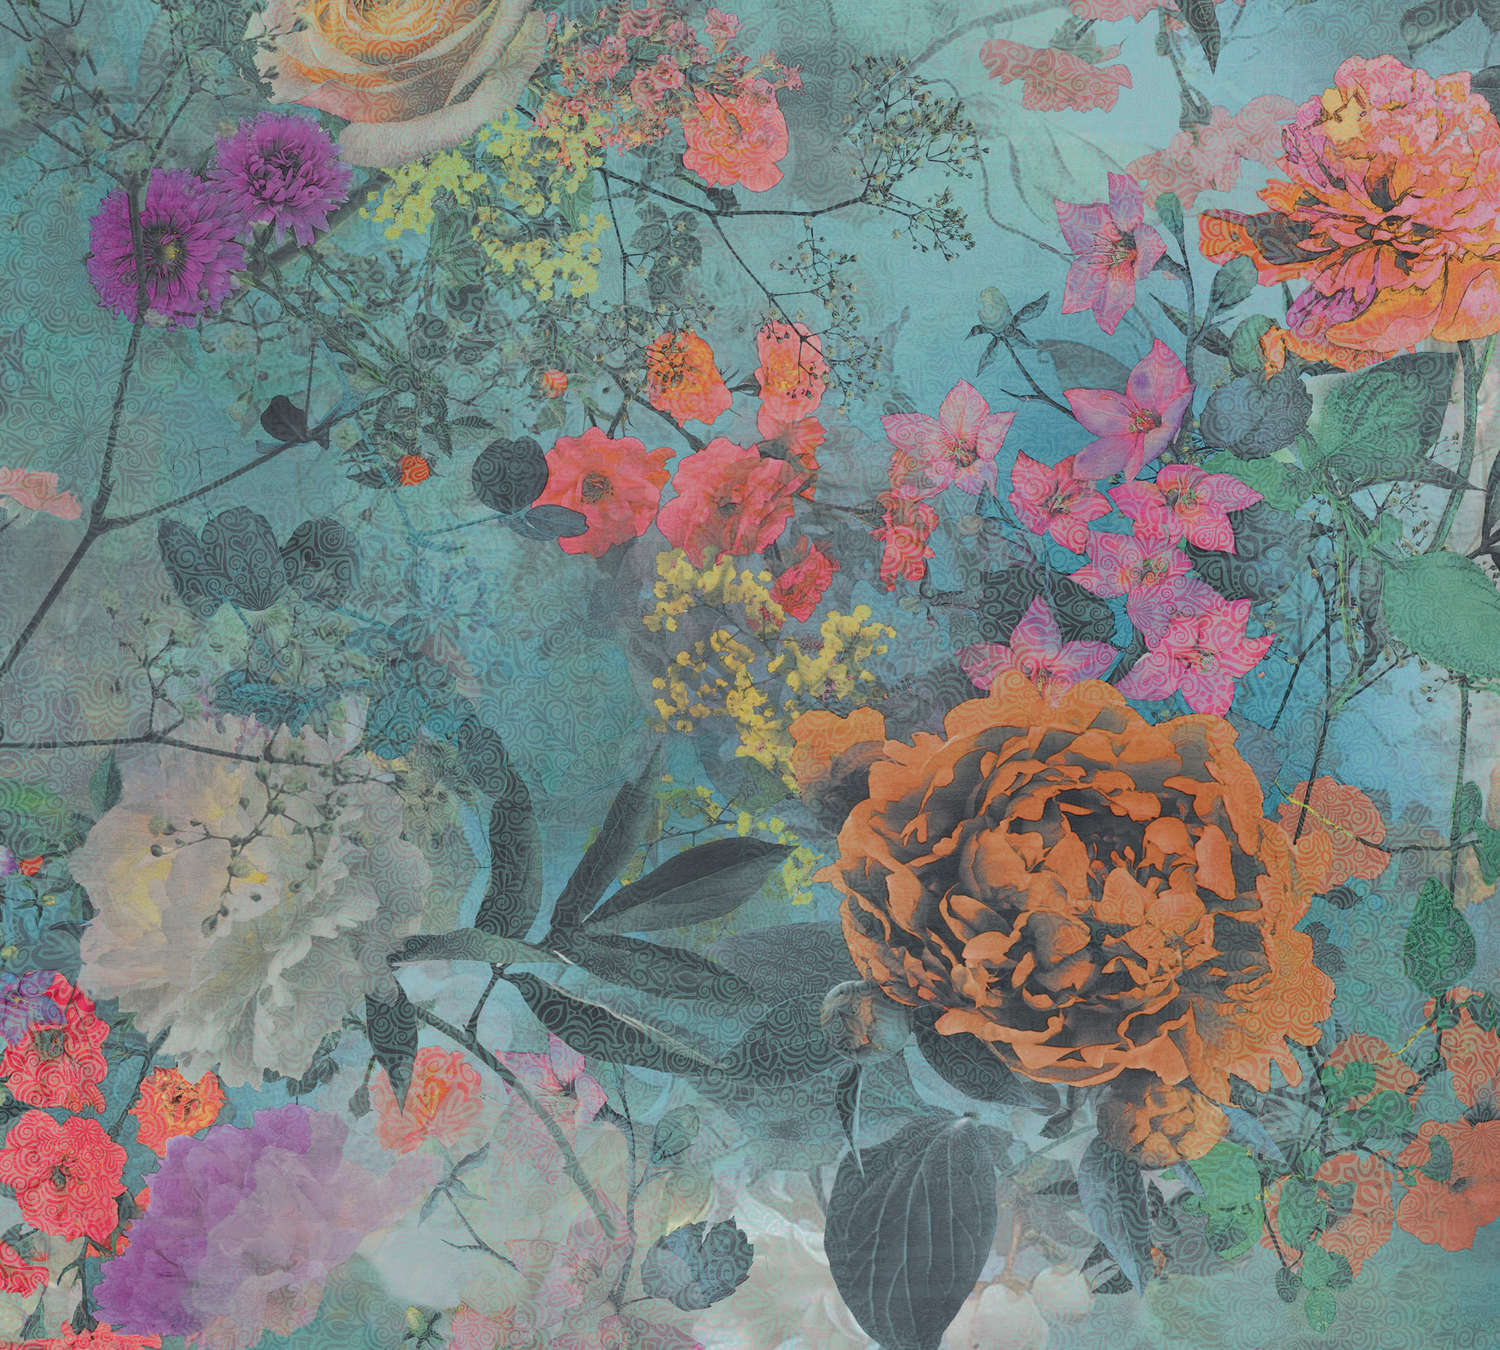             Papier peint jeunesse avec motif de fleurs - bleu, orange, rose
        